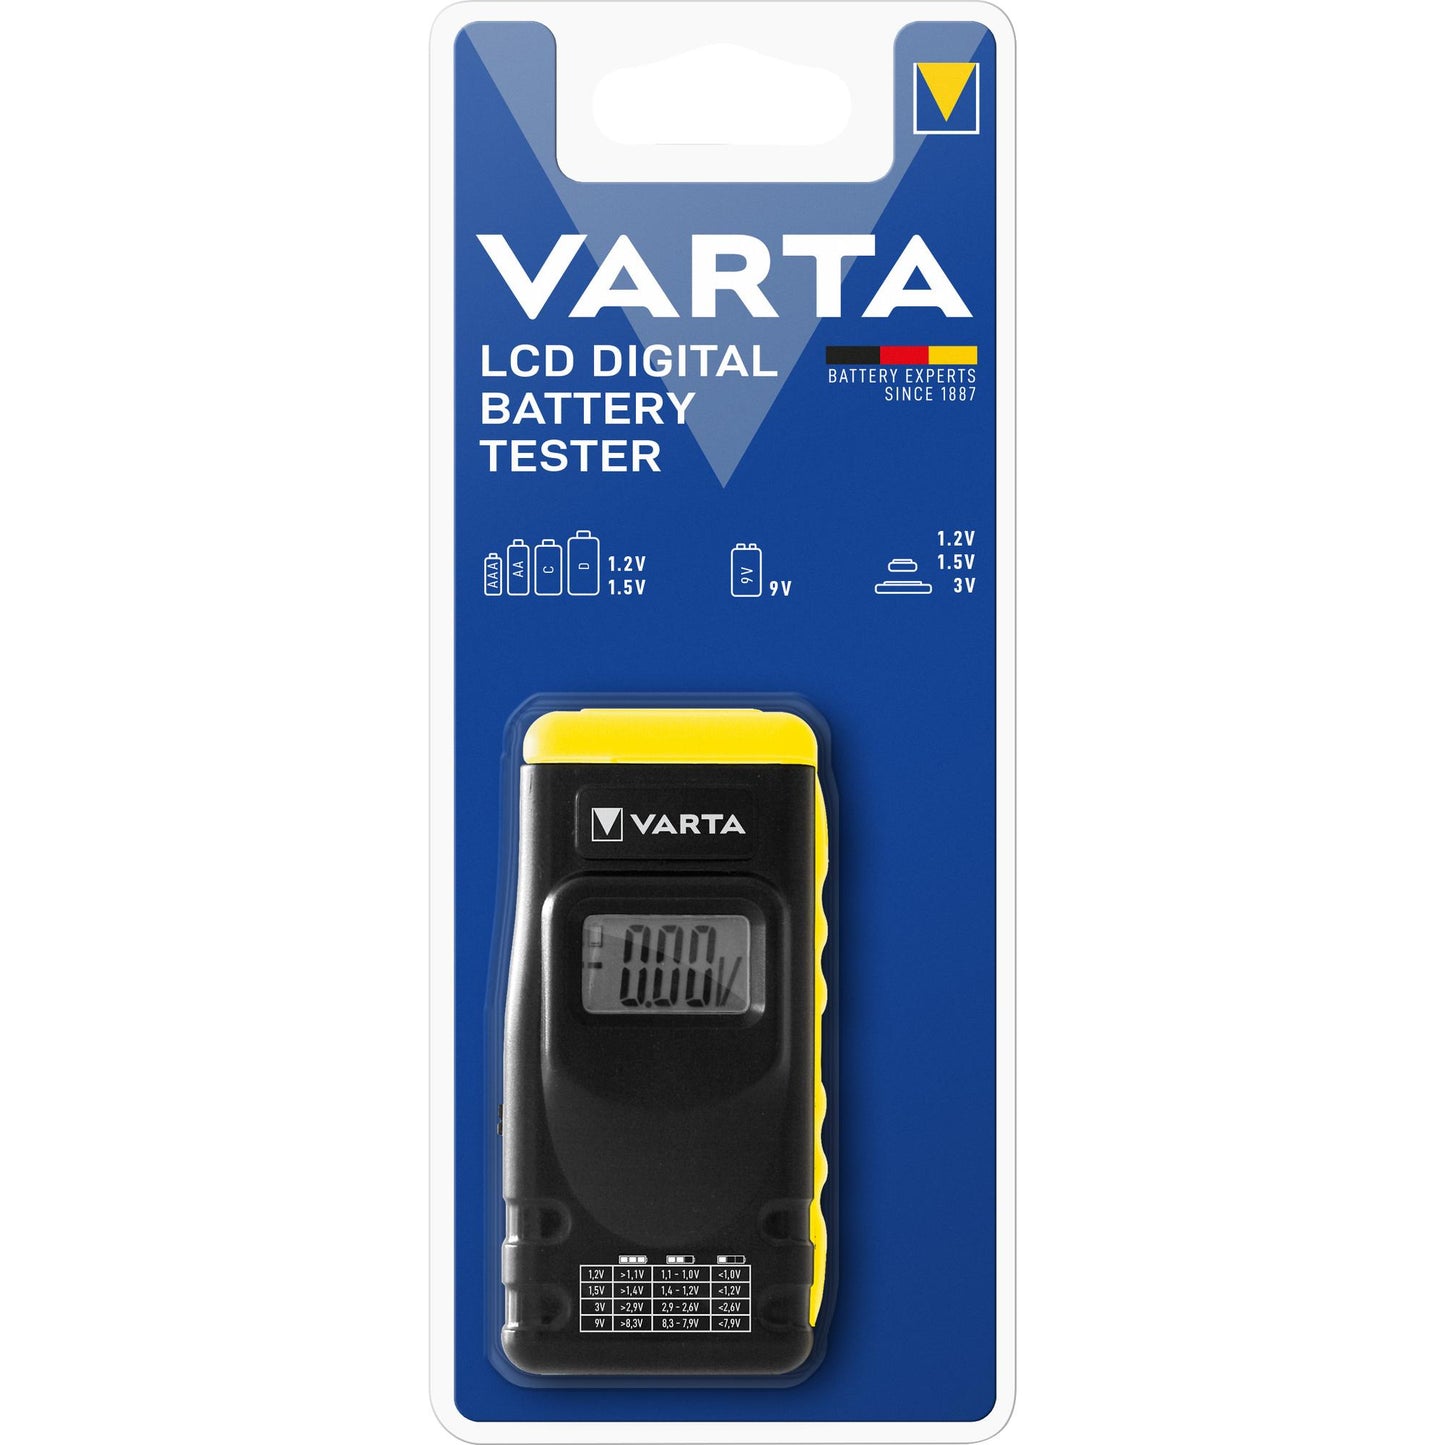 VARTA Batterietester LCD Digital für AA, AAA, C, D, 9V, Retail Blister